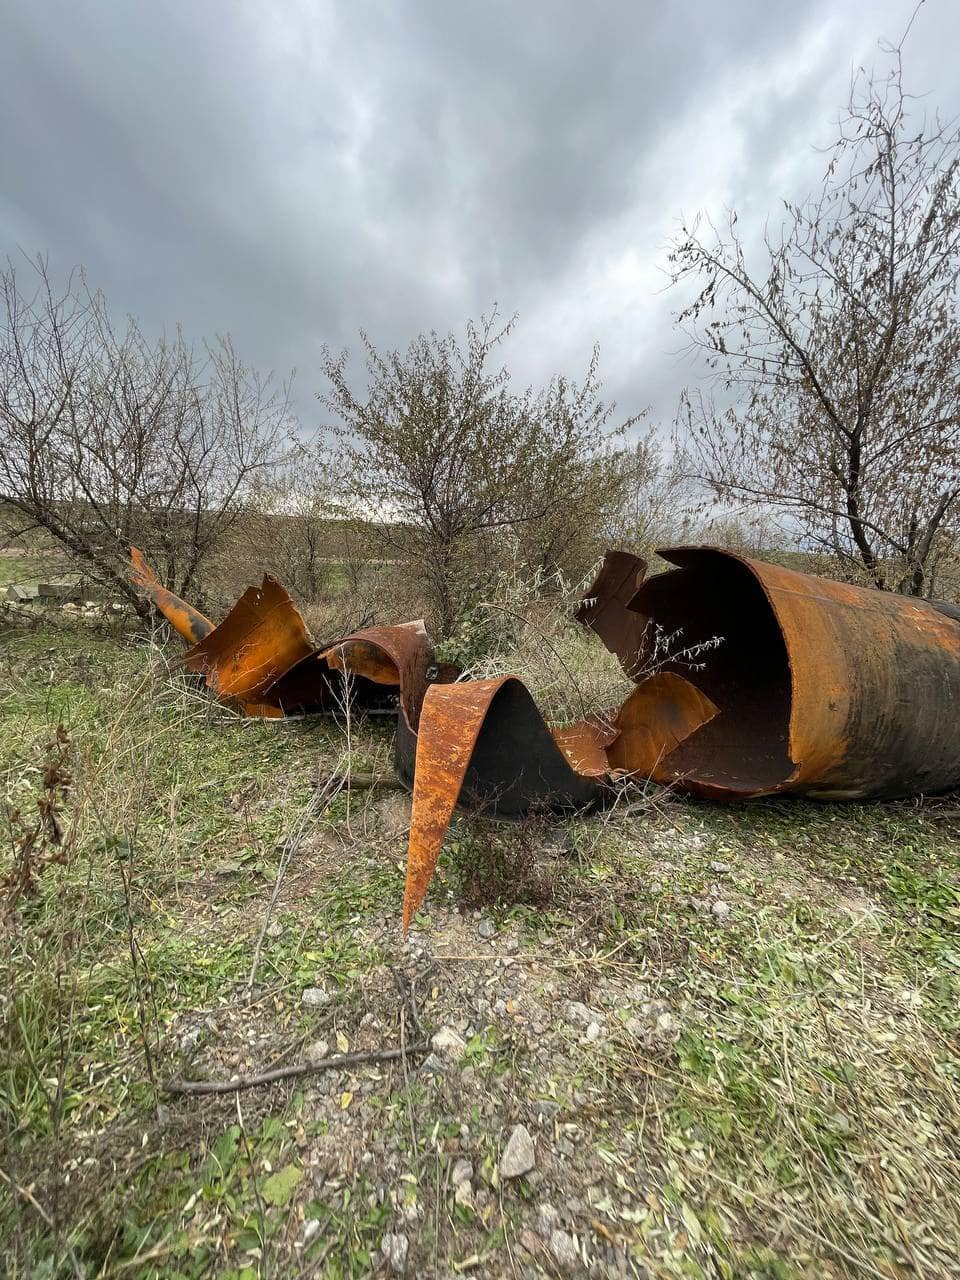 16 листопада фахівці завершили ремонтні роботи одного з пошкоджених внаслідок бойових дій відрізків водоводу Дніпро-Миколаїв.